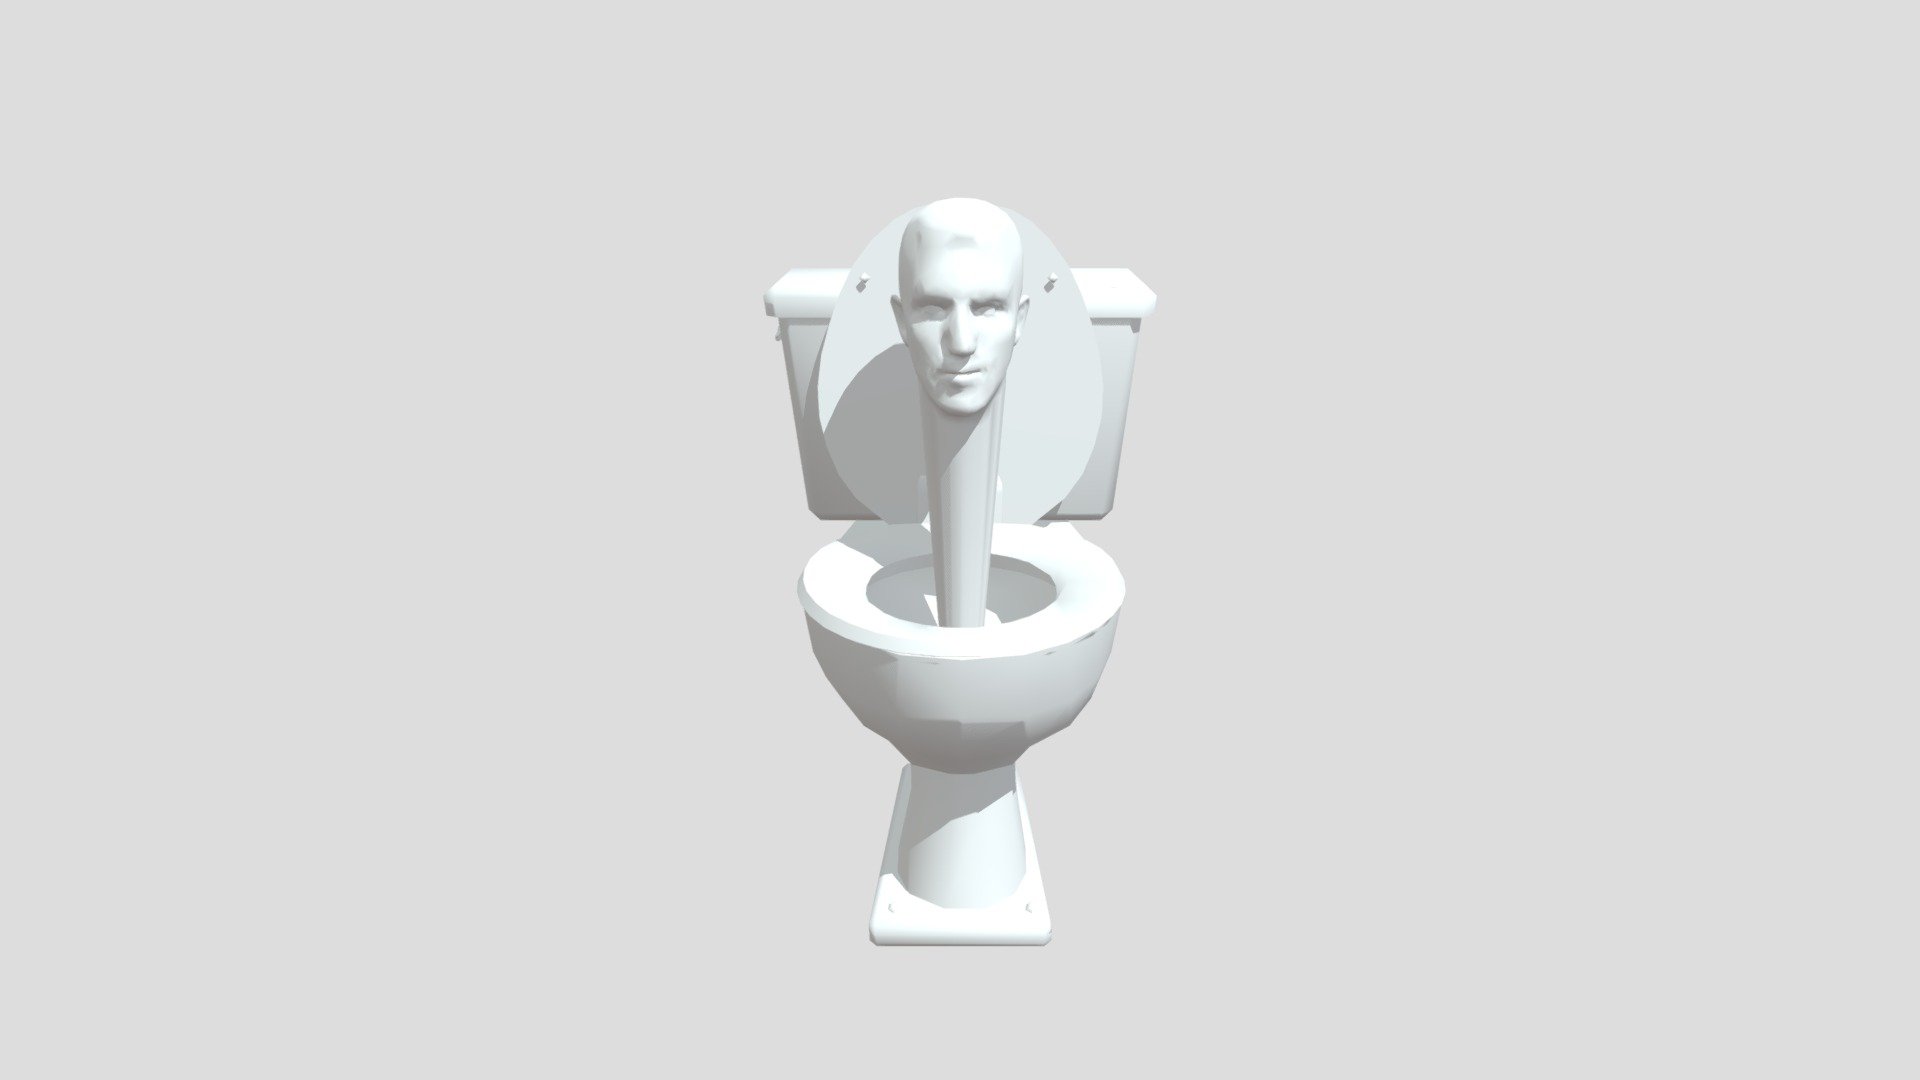 Steam Workshop::skibidi toilet gman 2.0 update